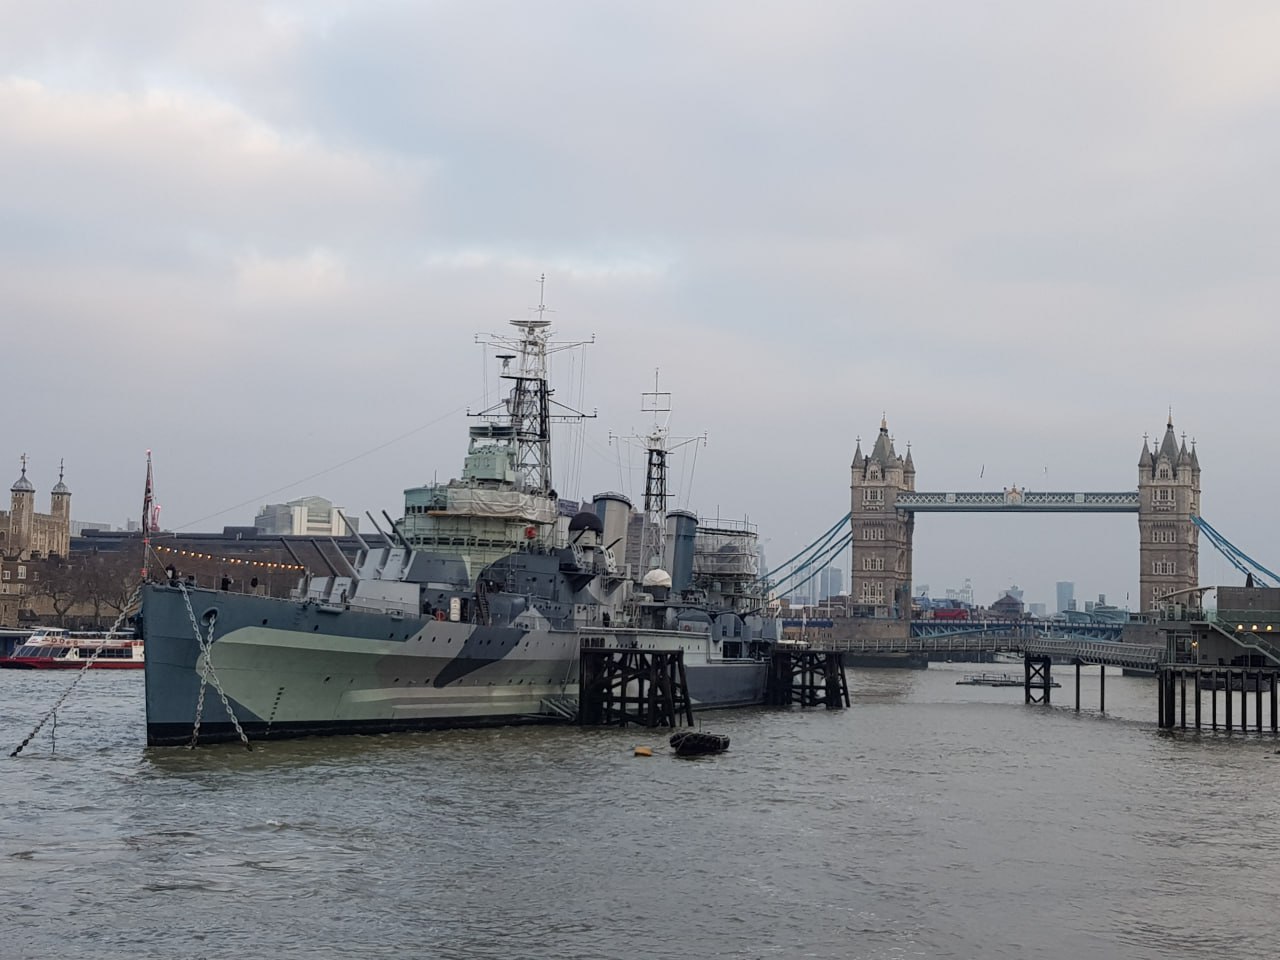 Корабль-музей HMS Belfast на Темзе, Лондон.